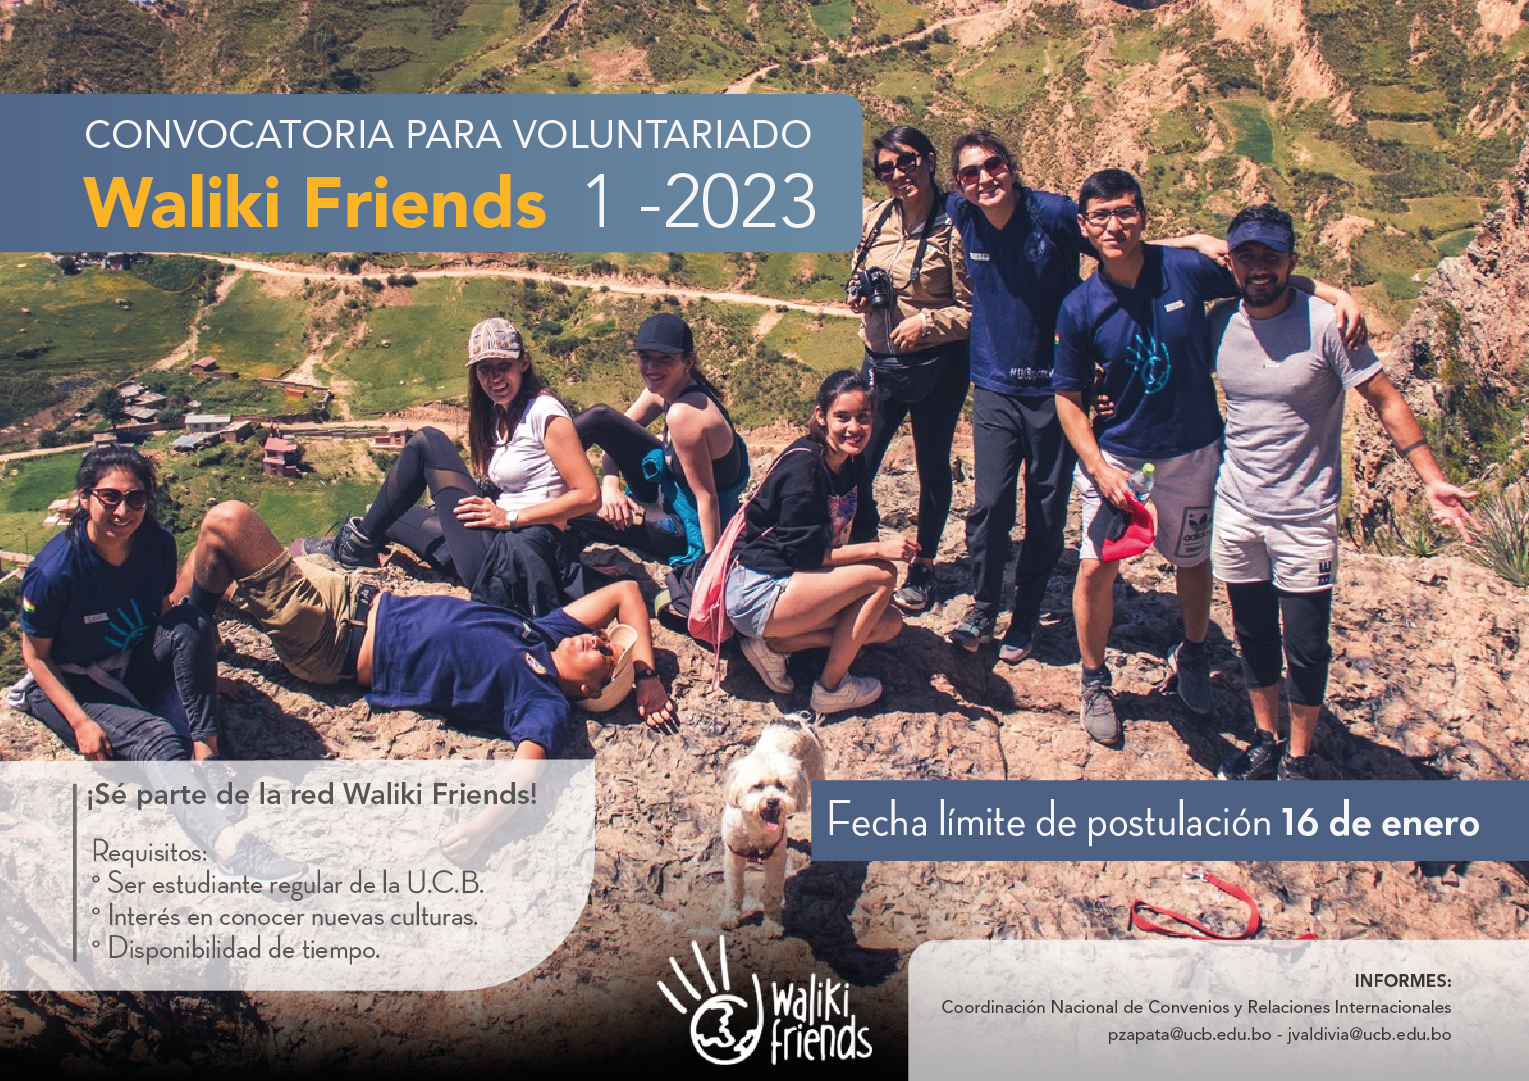 “¡Ya está abierto el reclutamiento para ser parte de la red de voluntariado Waliki Friends para el semestre 1-2023!